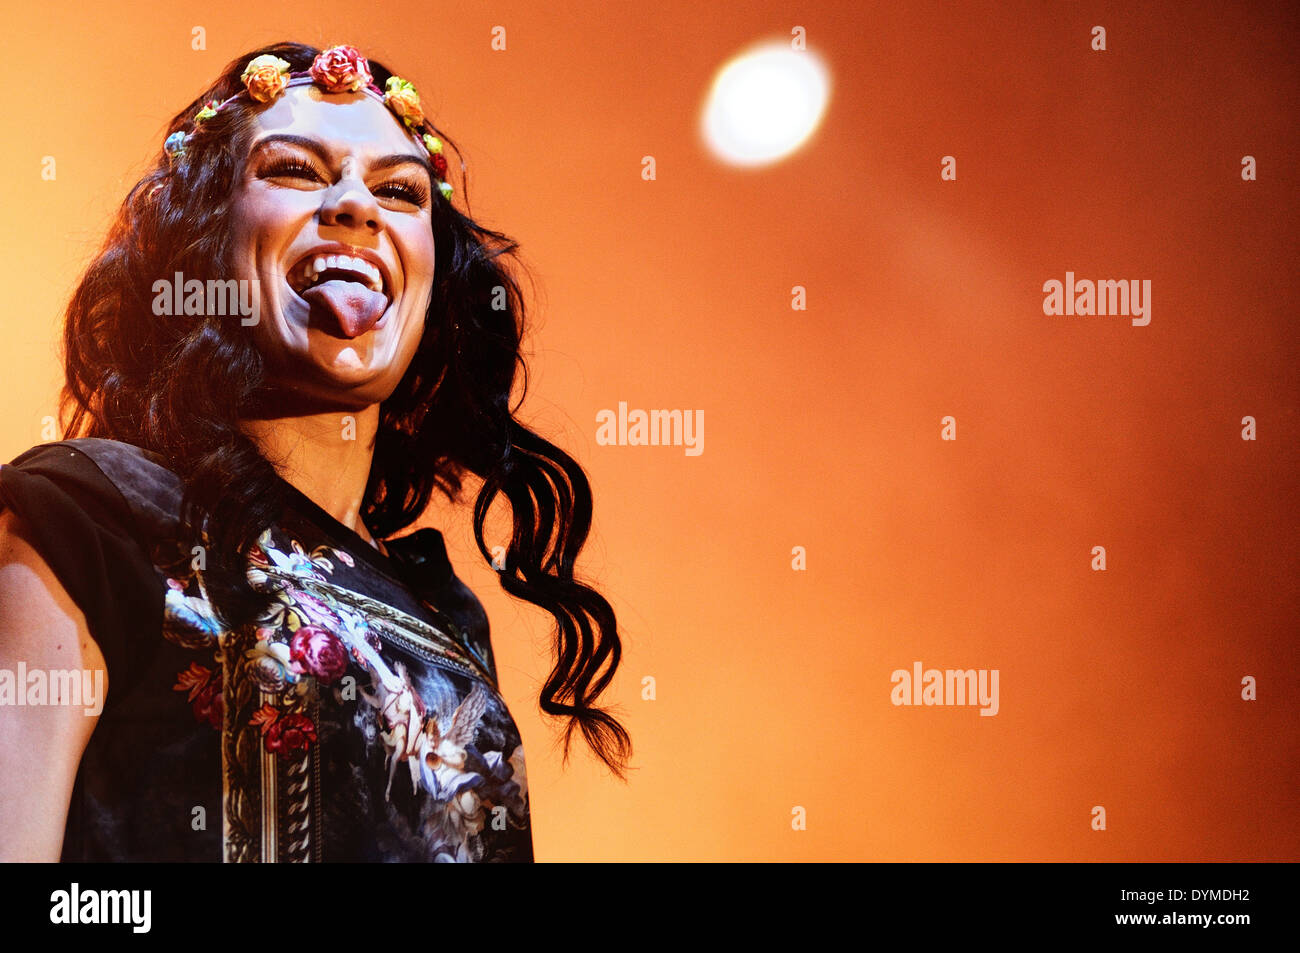 BENICASSIM, Spanien - 14 Juli: Jessie J, britischer Sänger und Songwriter, steckte ihre Zunge heraus, um die Menge während ihres Auftritts. Stockfoto